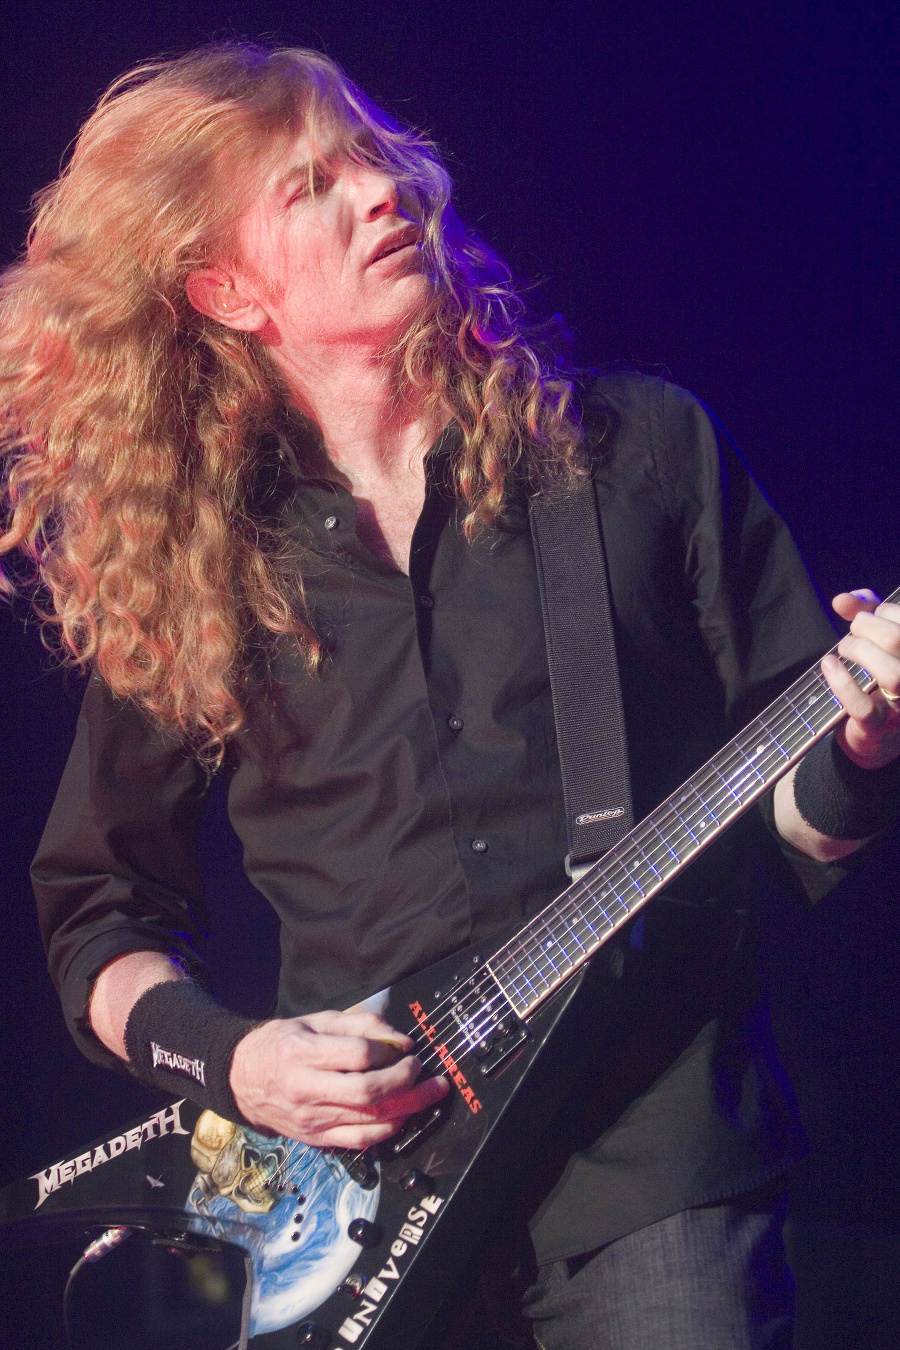 Líder americkej kapely Megadeth